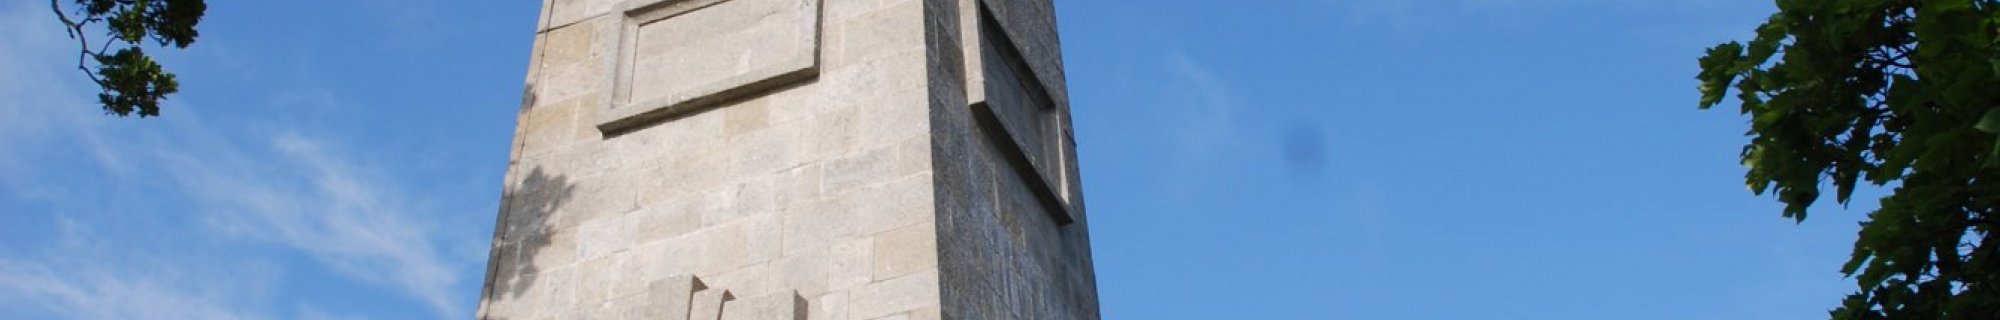 Stillorgan Obelisk